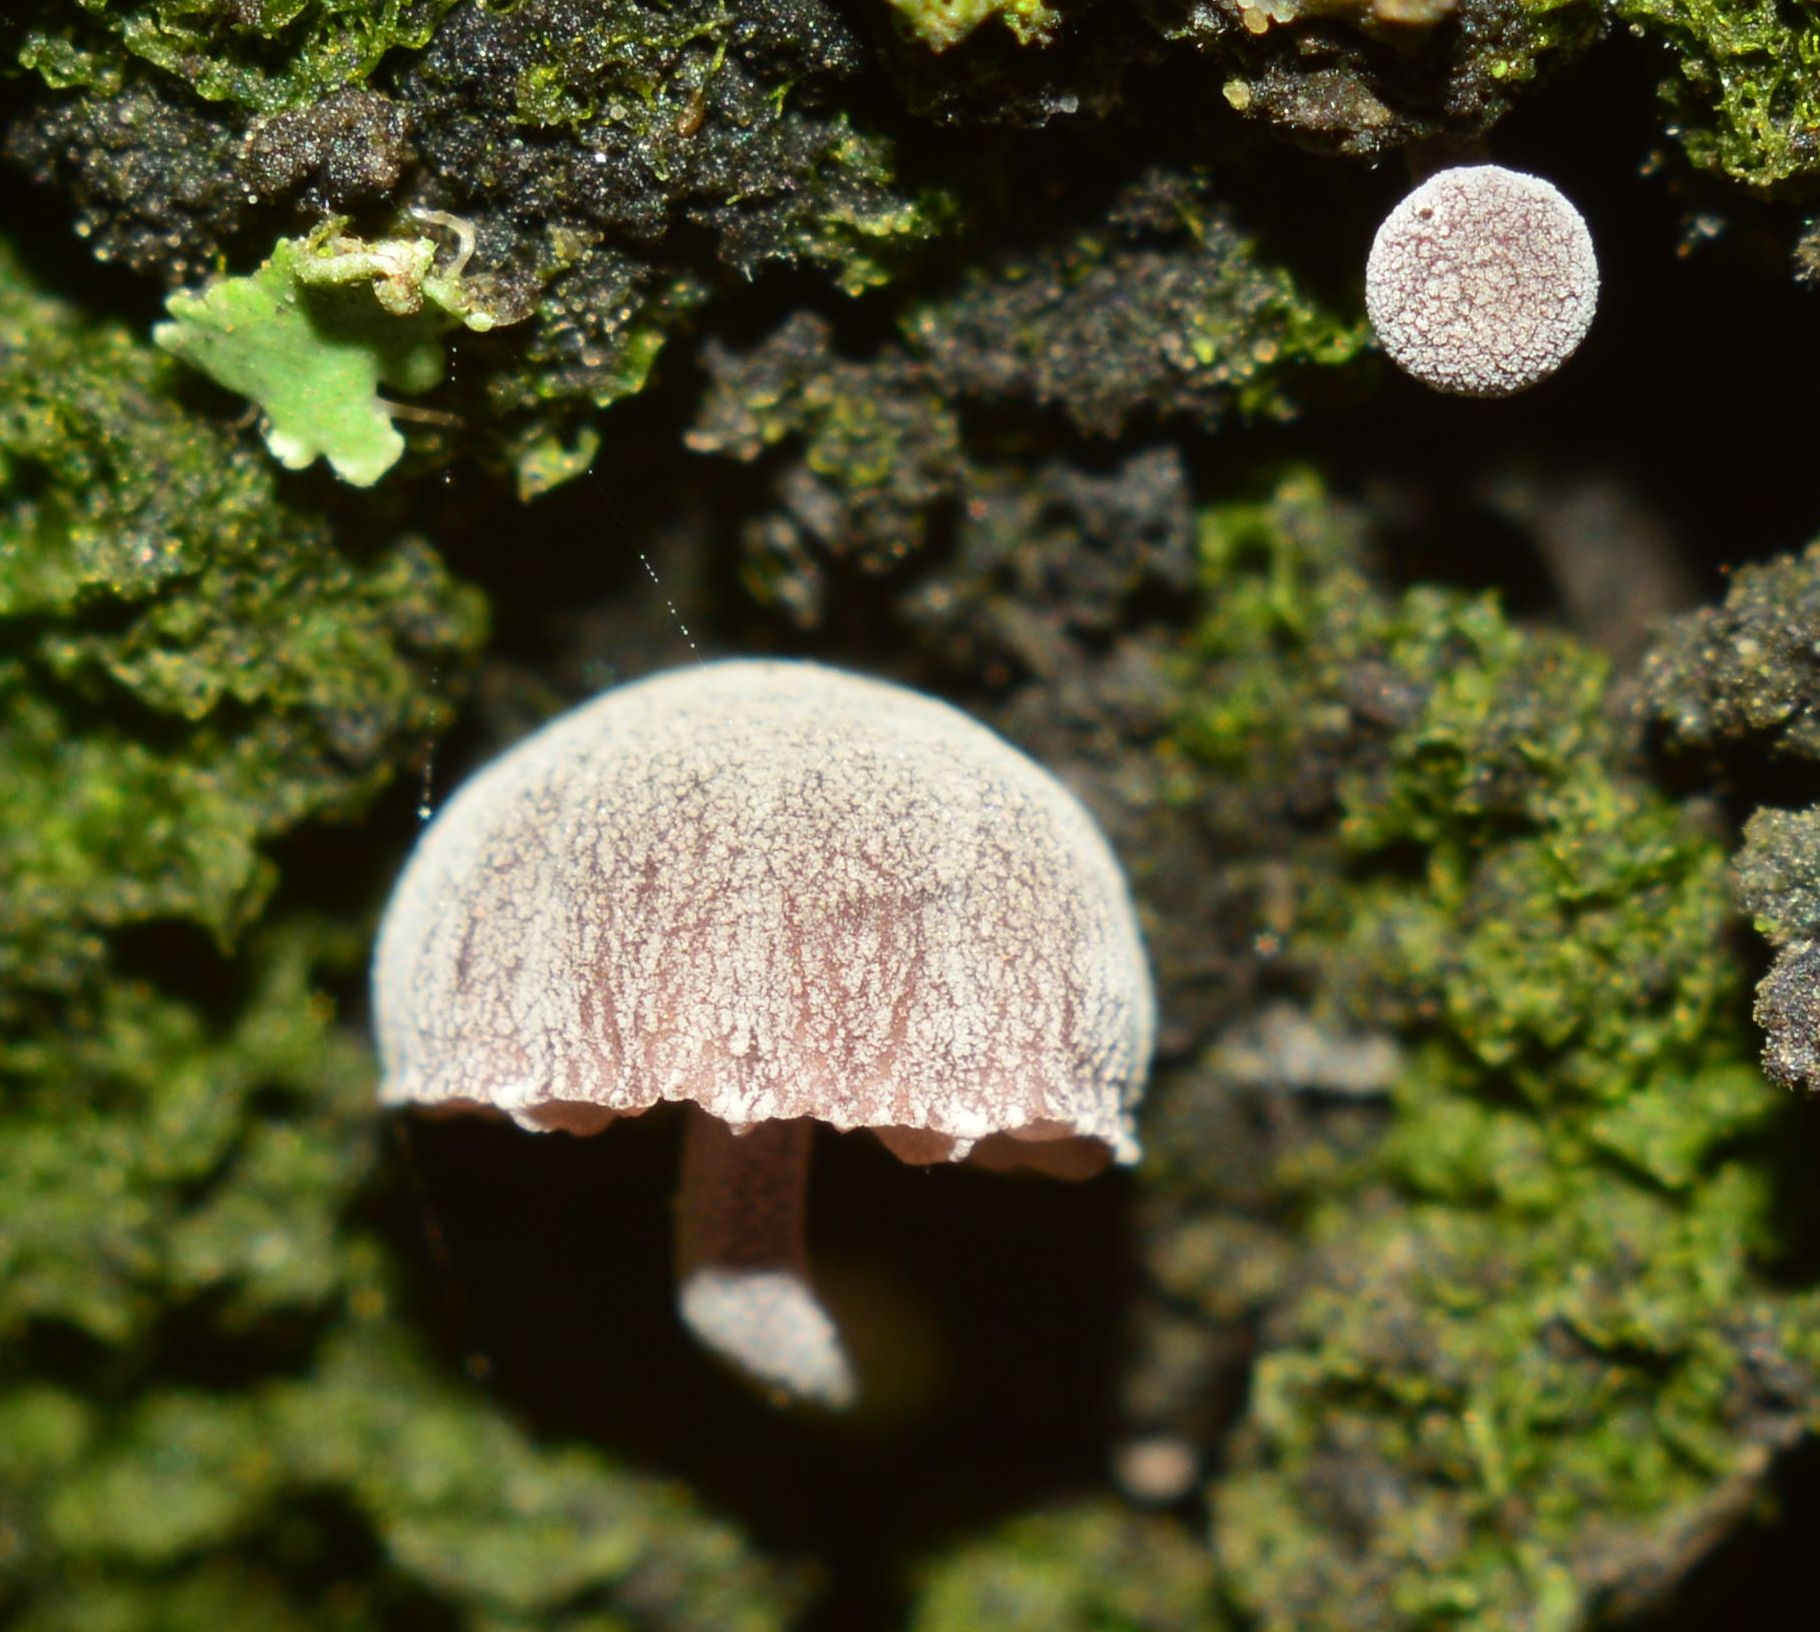 Мицена мелиевая — описание гриба , где растет, похожие виды, фото